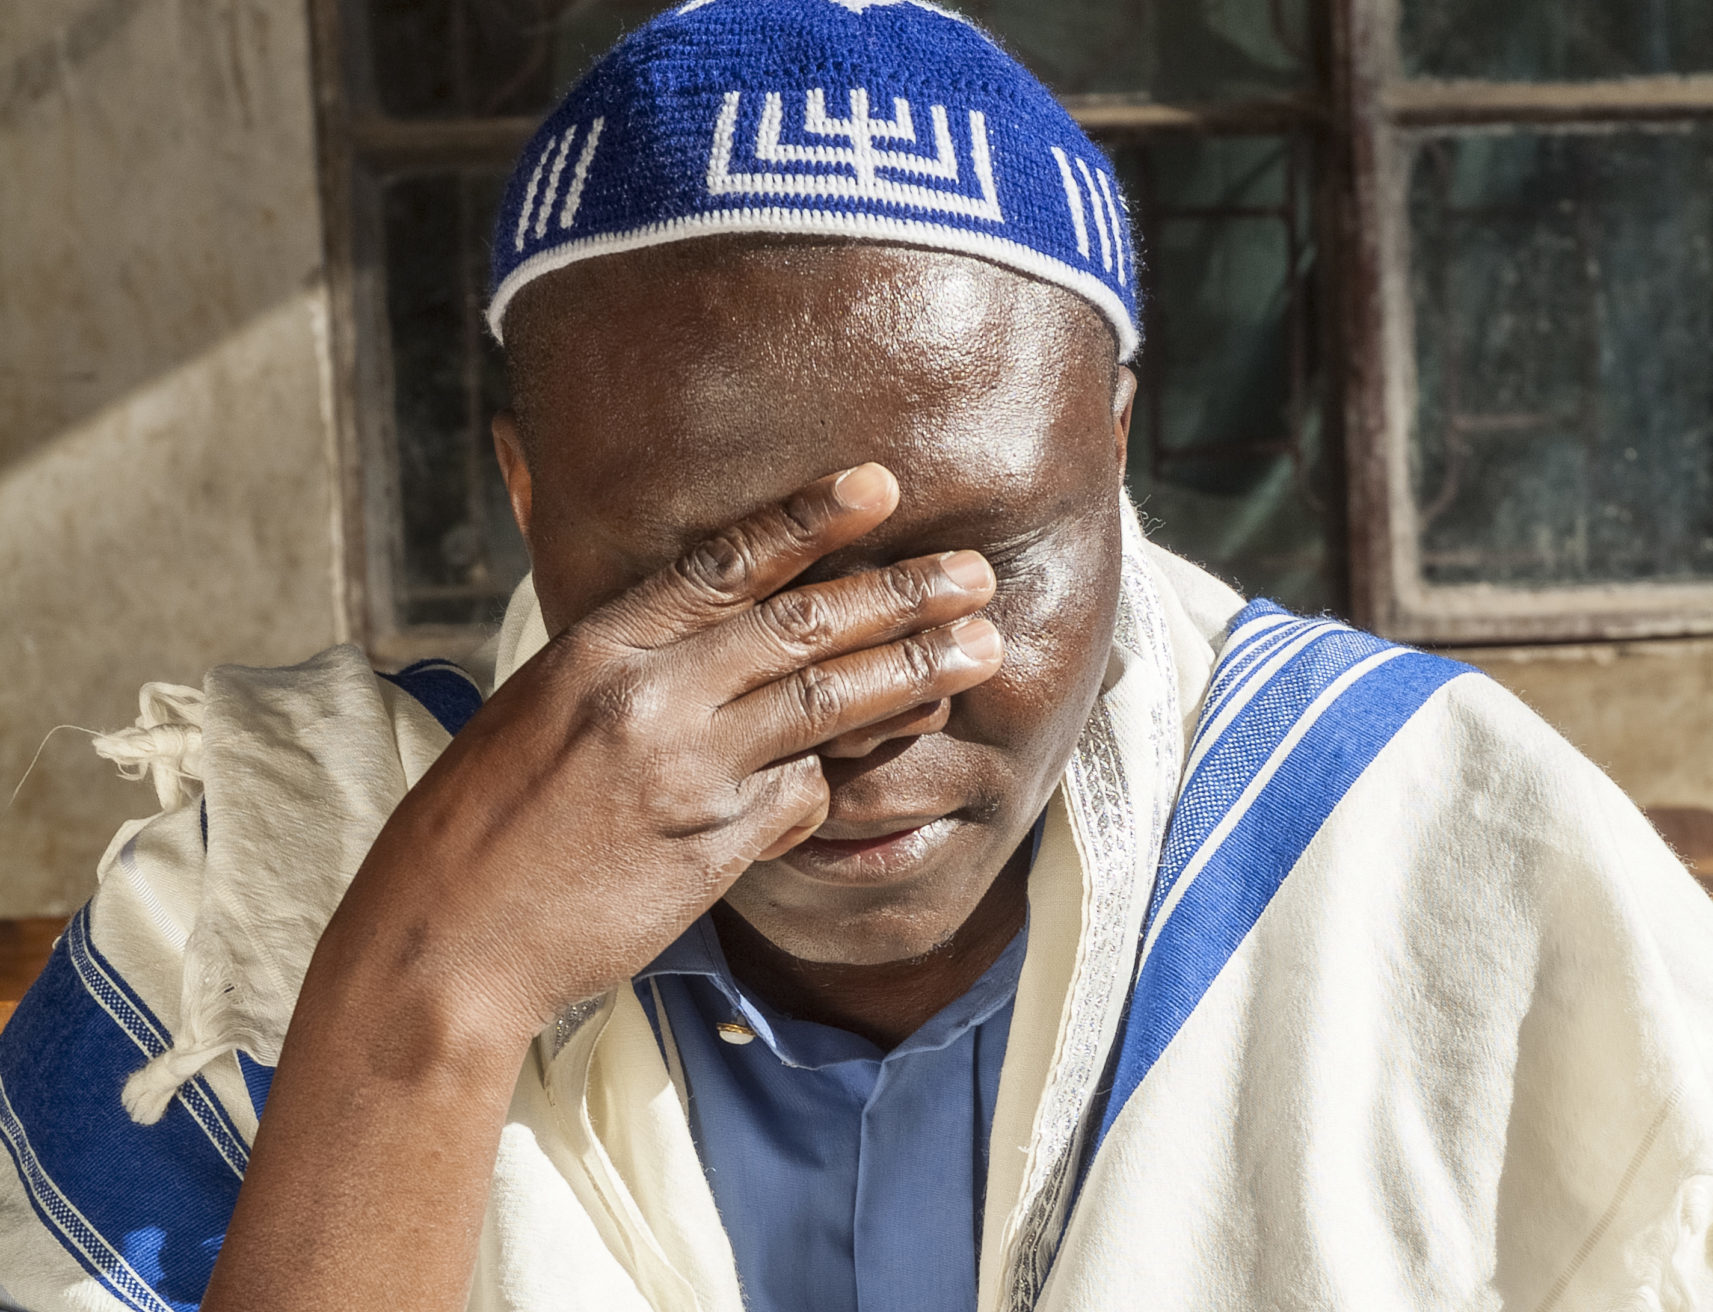 Man praying, wearing prayer shawl and skull cap.